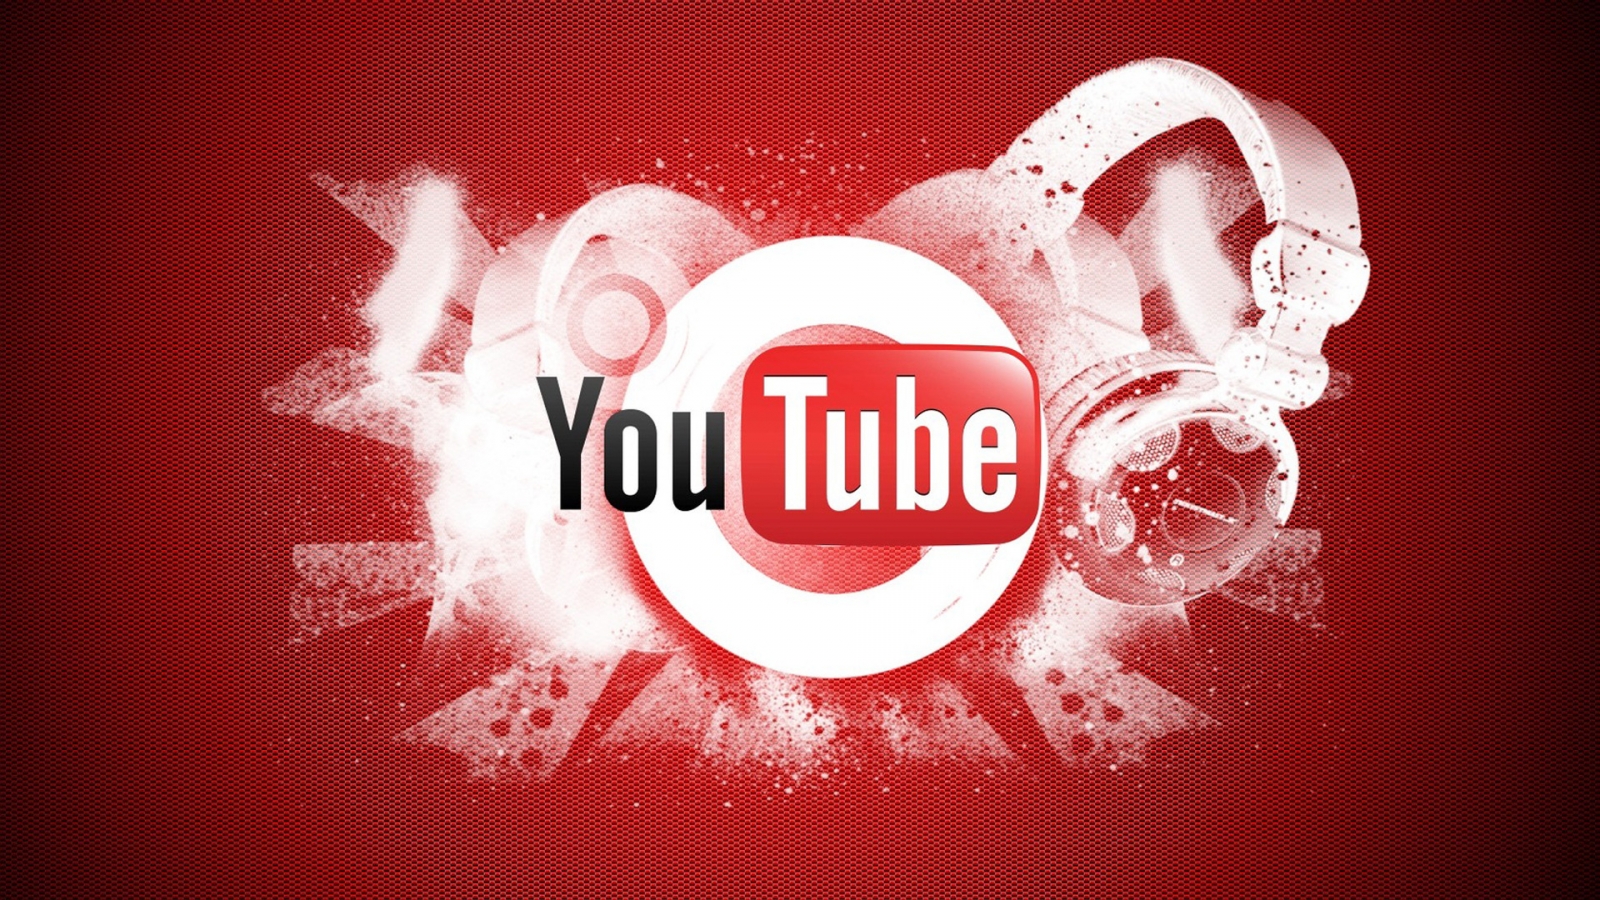 YouTube Logo for 1600 x 900 HDTV resolution